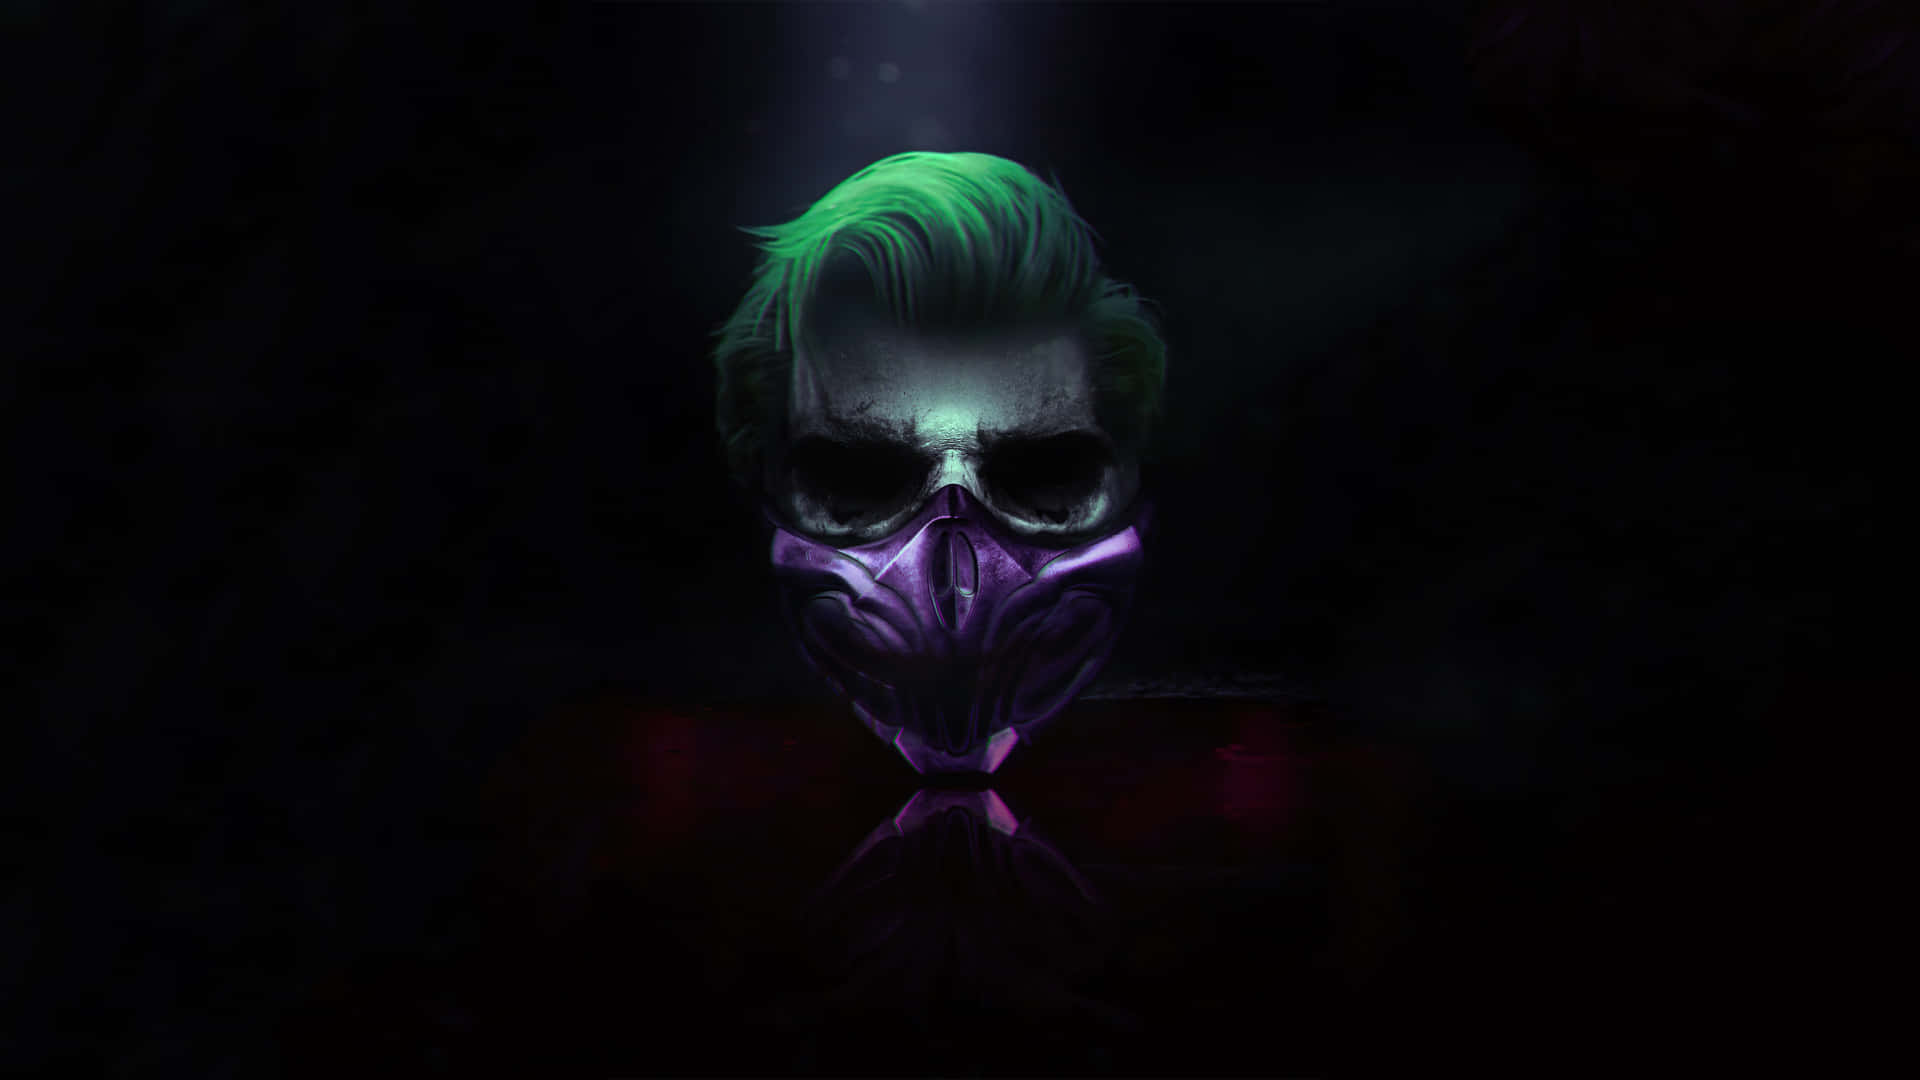 Dasoriginalgesicht Hinter Der Ikonischen Joker-maske Mit Einem Unheimlichen Und Schelmischen Grinsen.